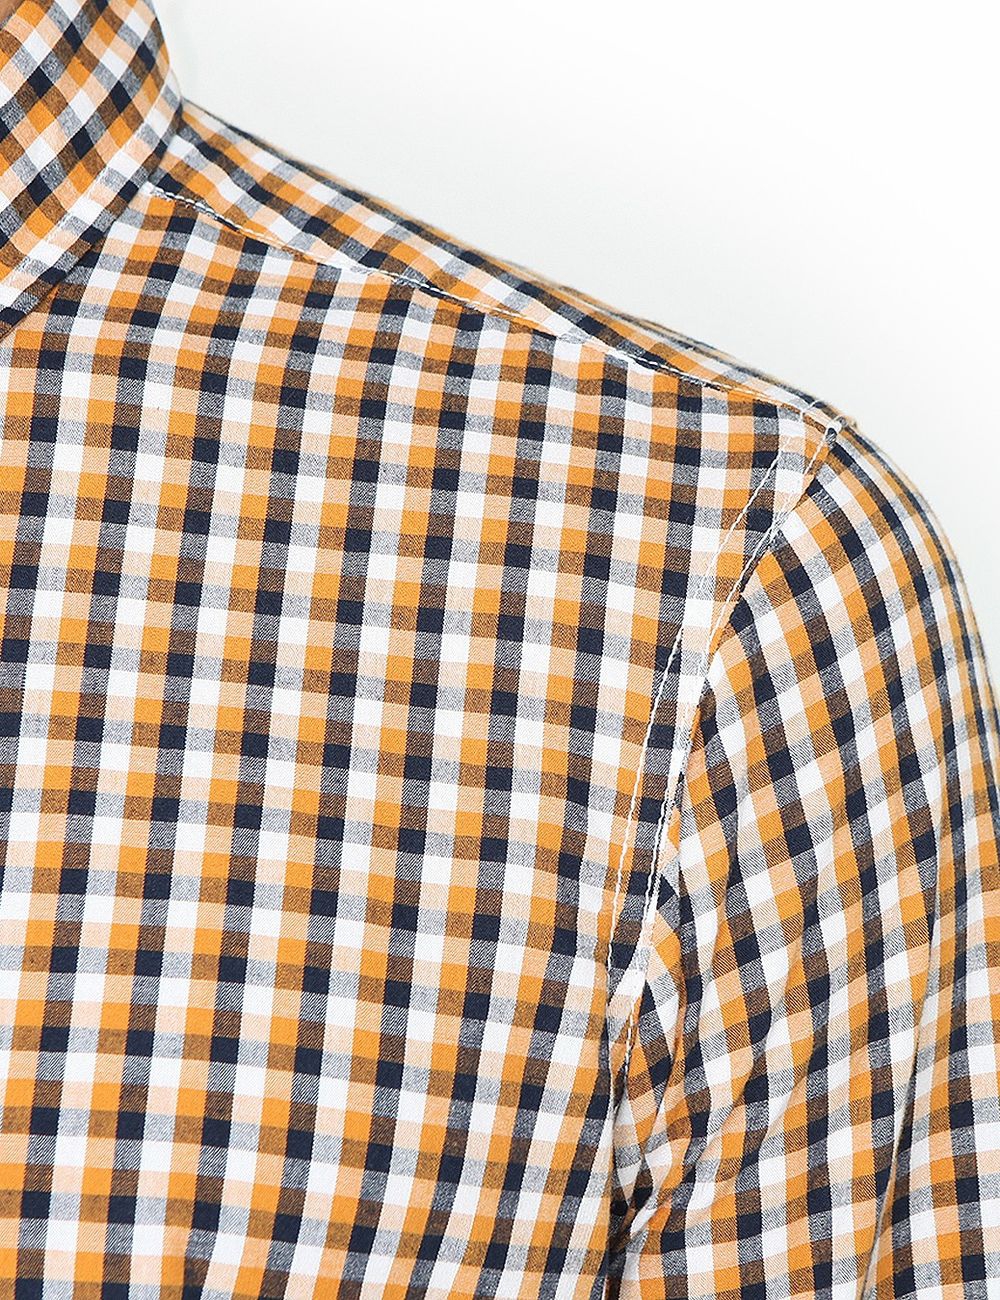 Мъжка памучна риза на каре в нюанс горчица от Diverse | Secretzone.bg